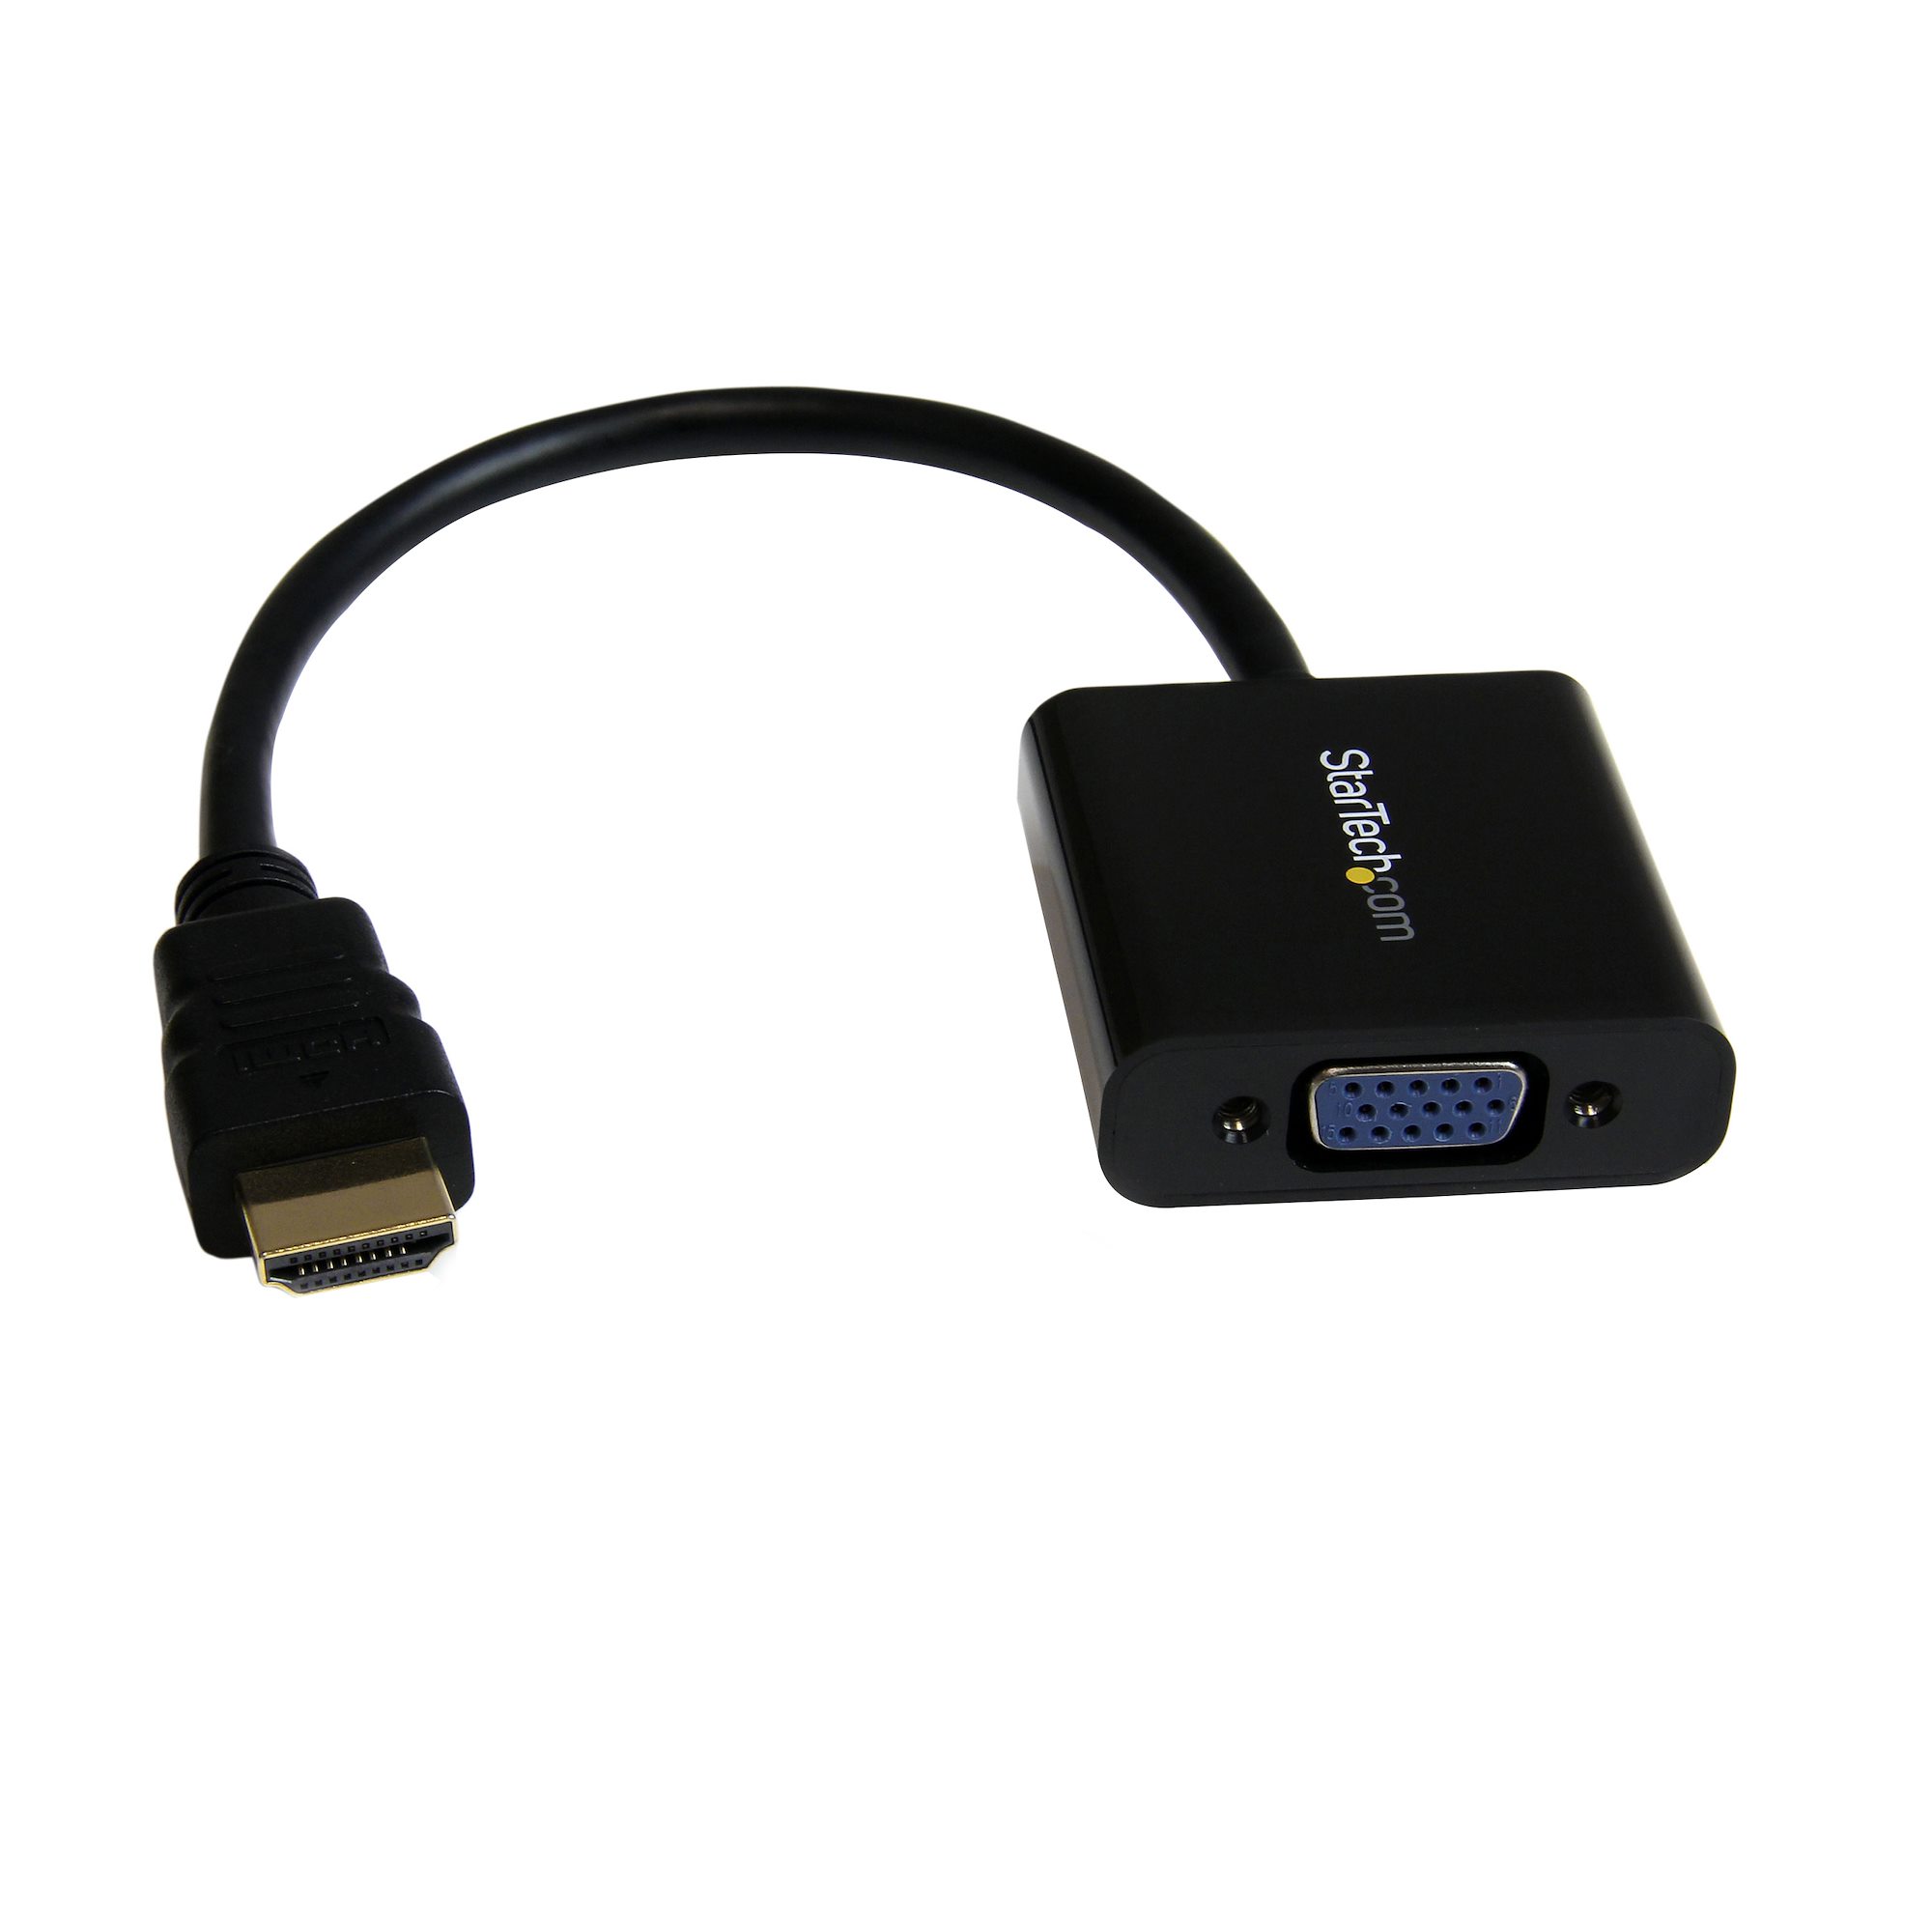 Adelaida postre Subir Cable Adaptador de Vídeo HDMI a VGA HD15 - Adaptadores de vídeo HDMI y DVI  | StarTech.com Europa